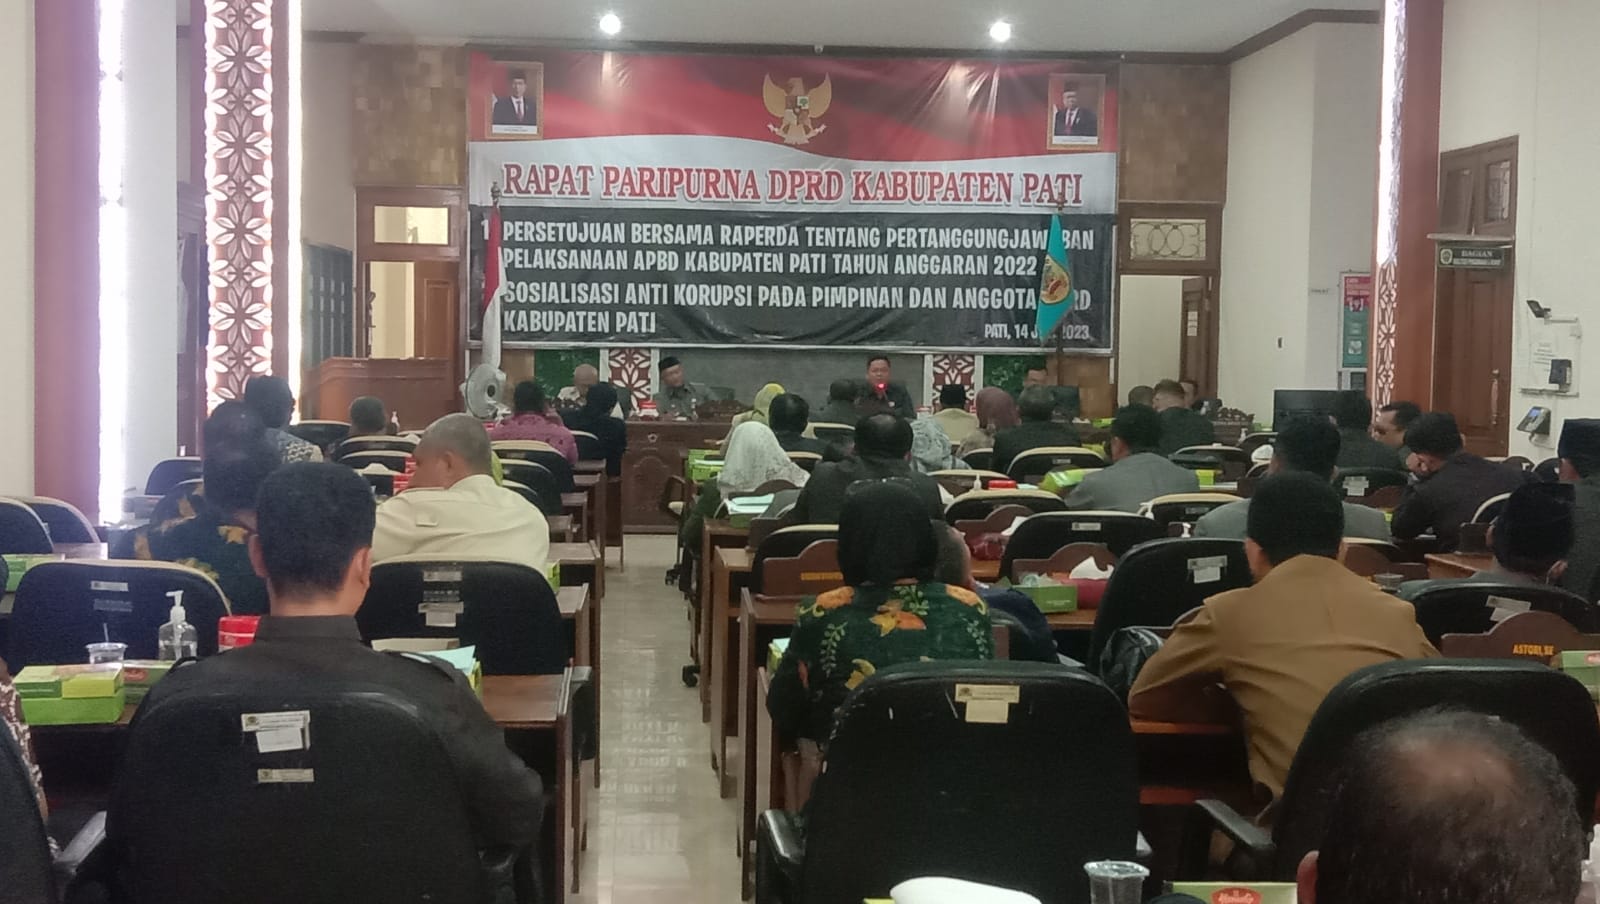 Rapat paripurna persetujuan pertanggungjawaban pelaksanaan APBD Kabupaten Pati dan penyampaian rekomendasi dari fraksi-fraksi dewan